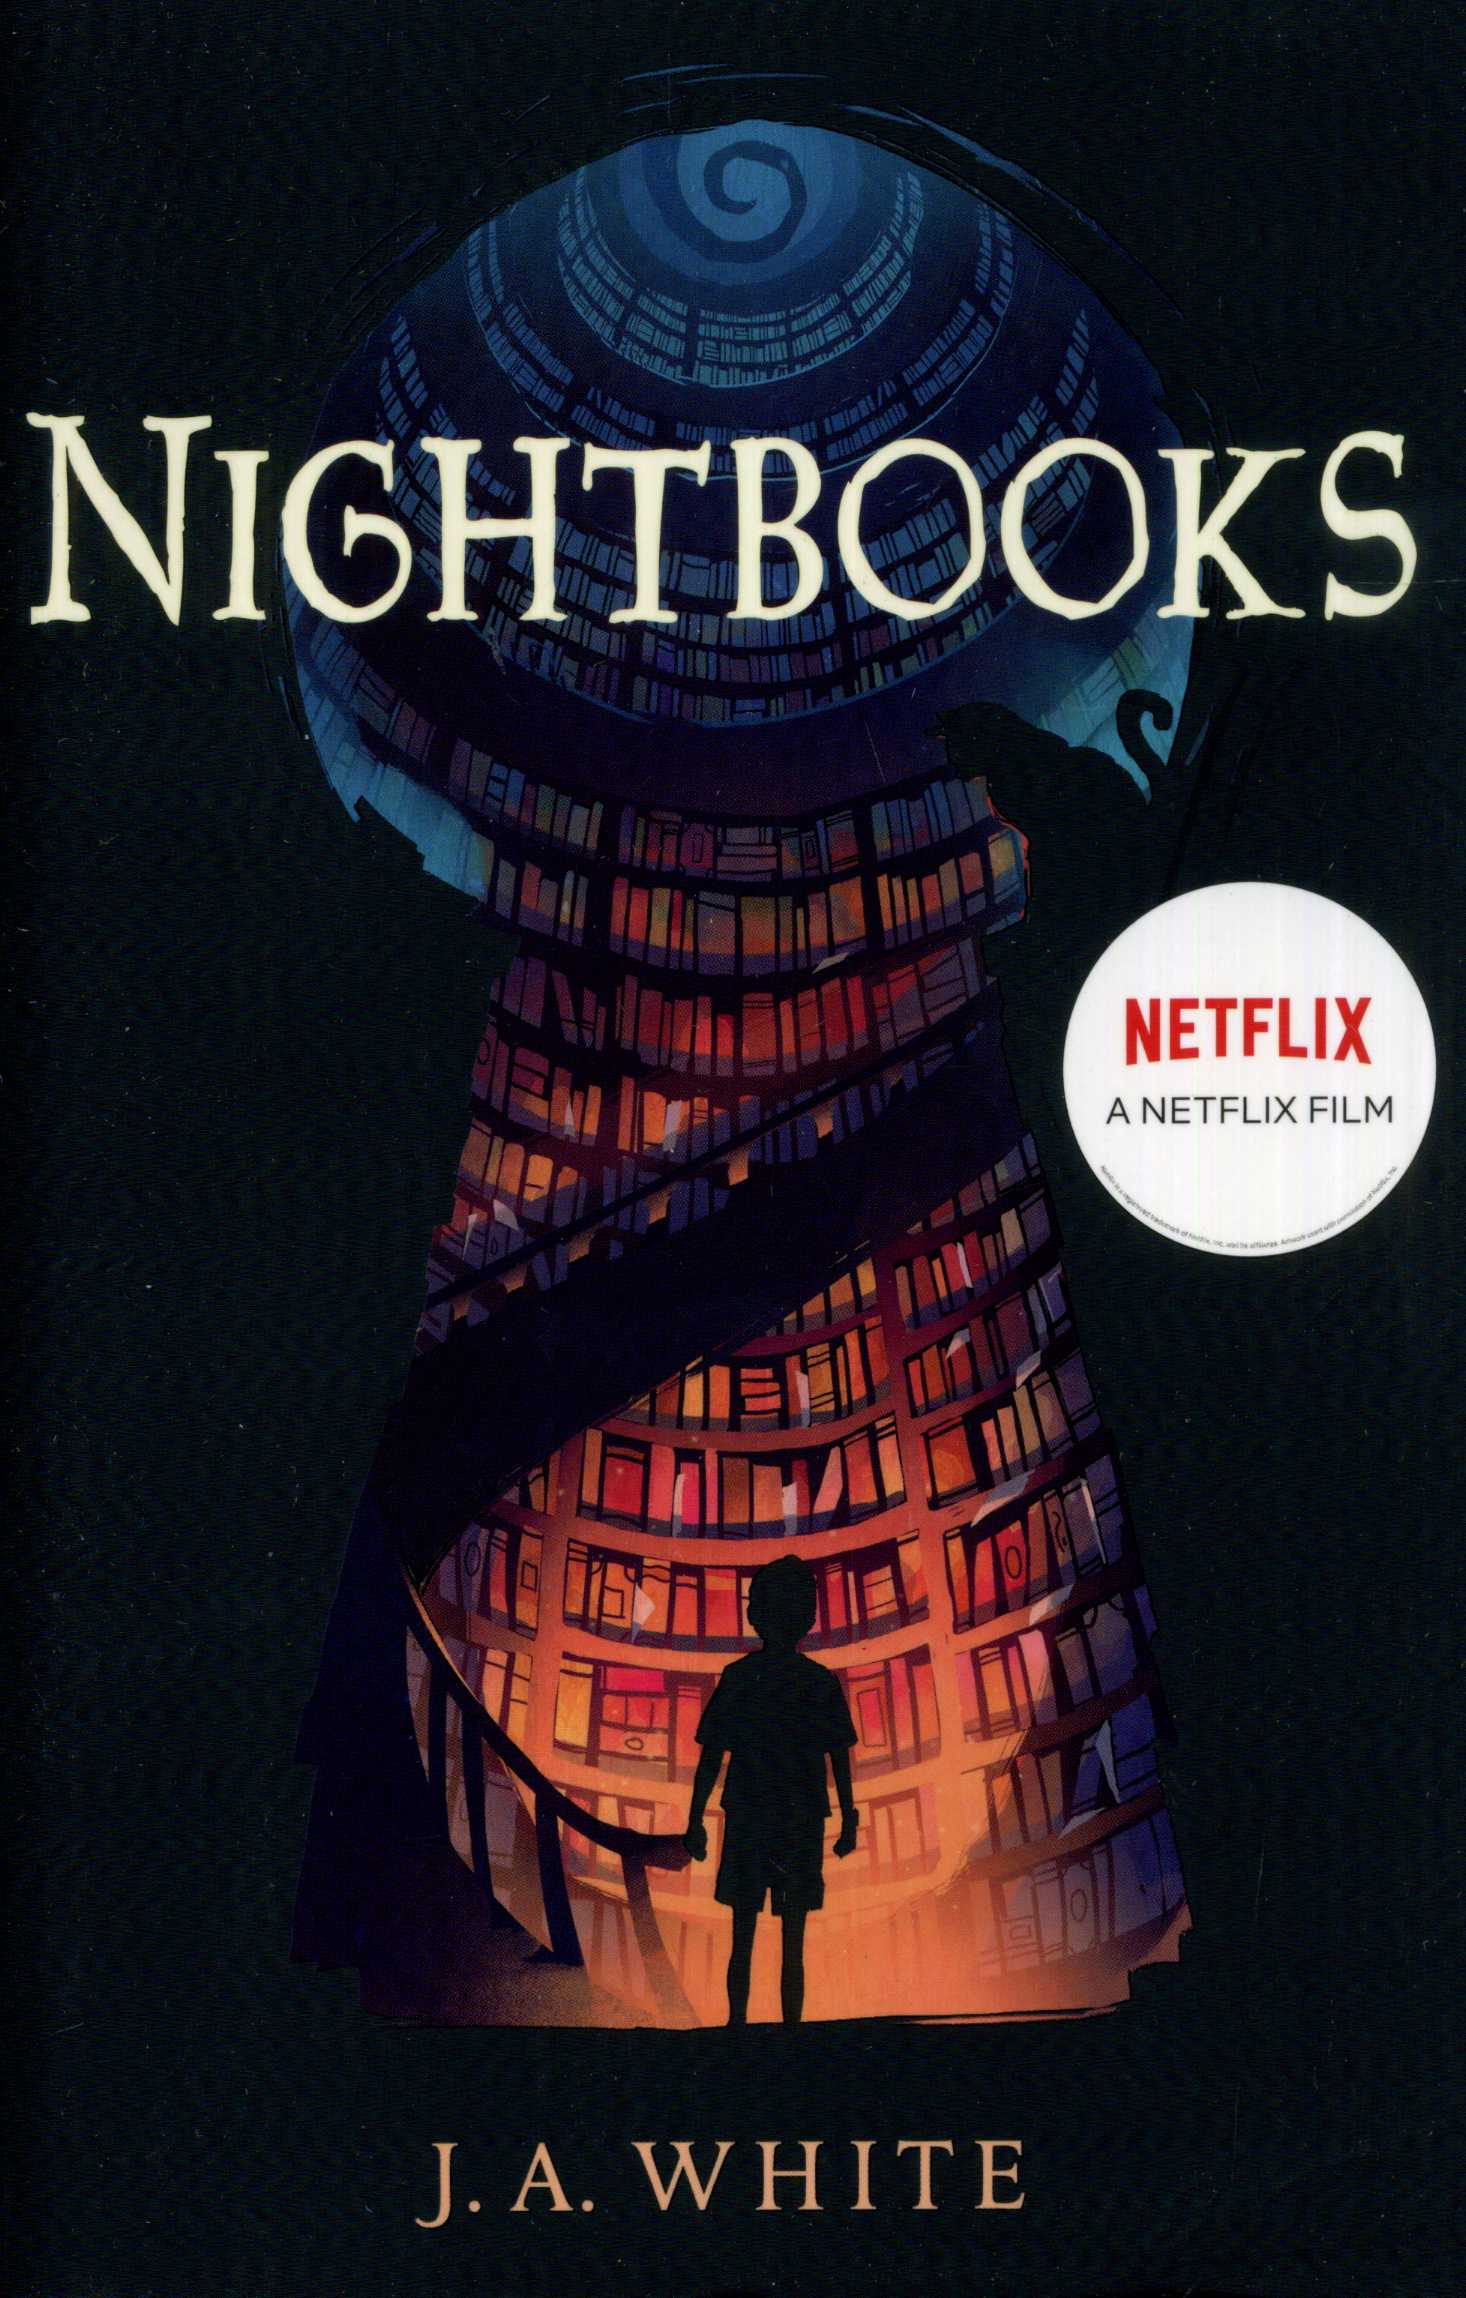 Nightbooks - Laburnum House Educational